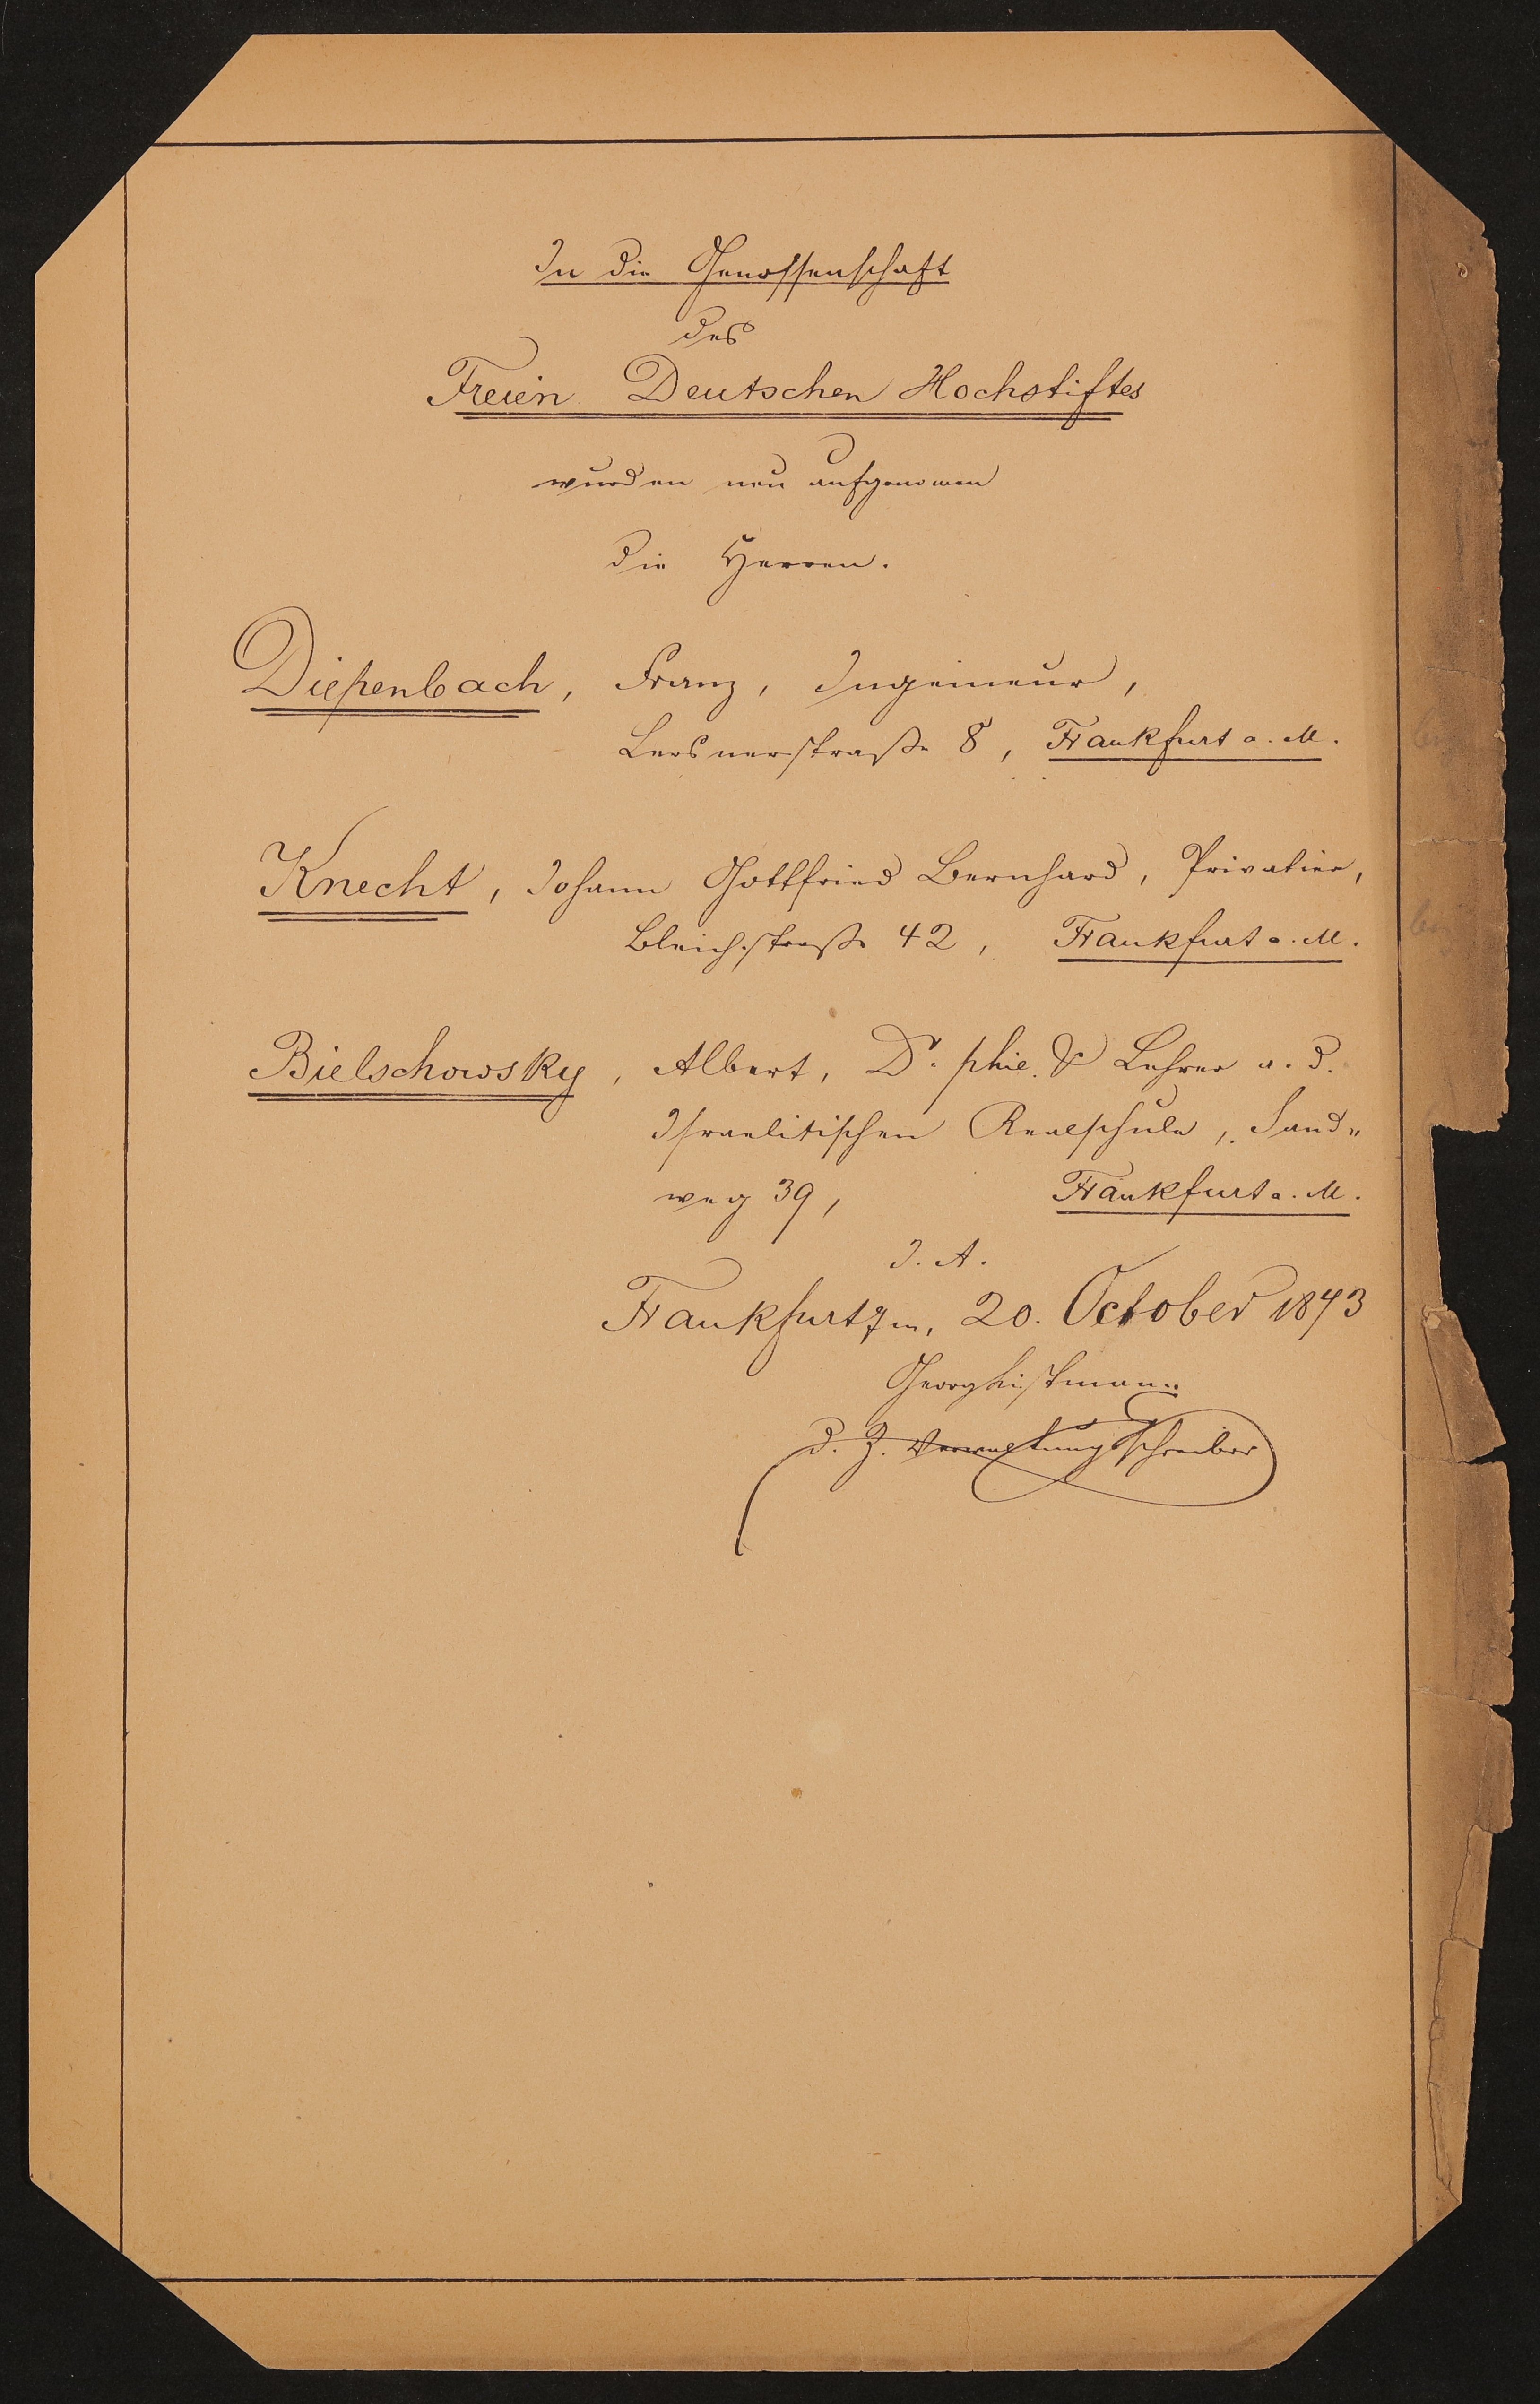 Liste "In die Genossenschaft des Freien Deutschen Hochstiftes wurden neu aufgenommen..." (20.10.1873) (Freies Deutsches Hochstift / Frankfurter Goethe-Museum Public Domain Mark)